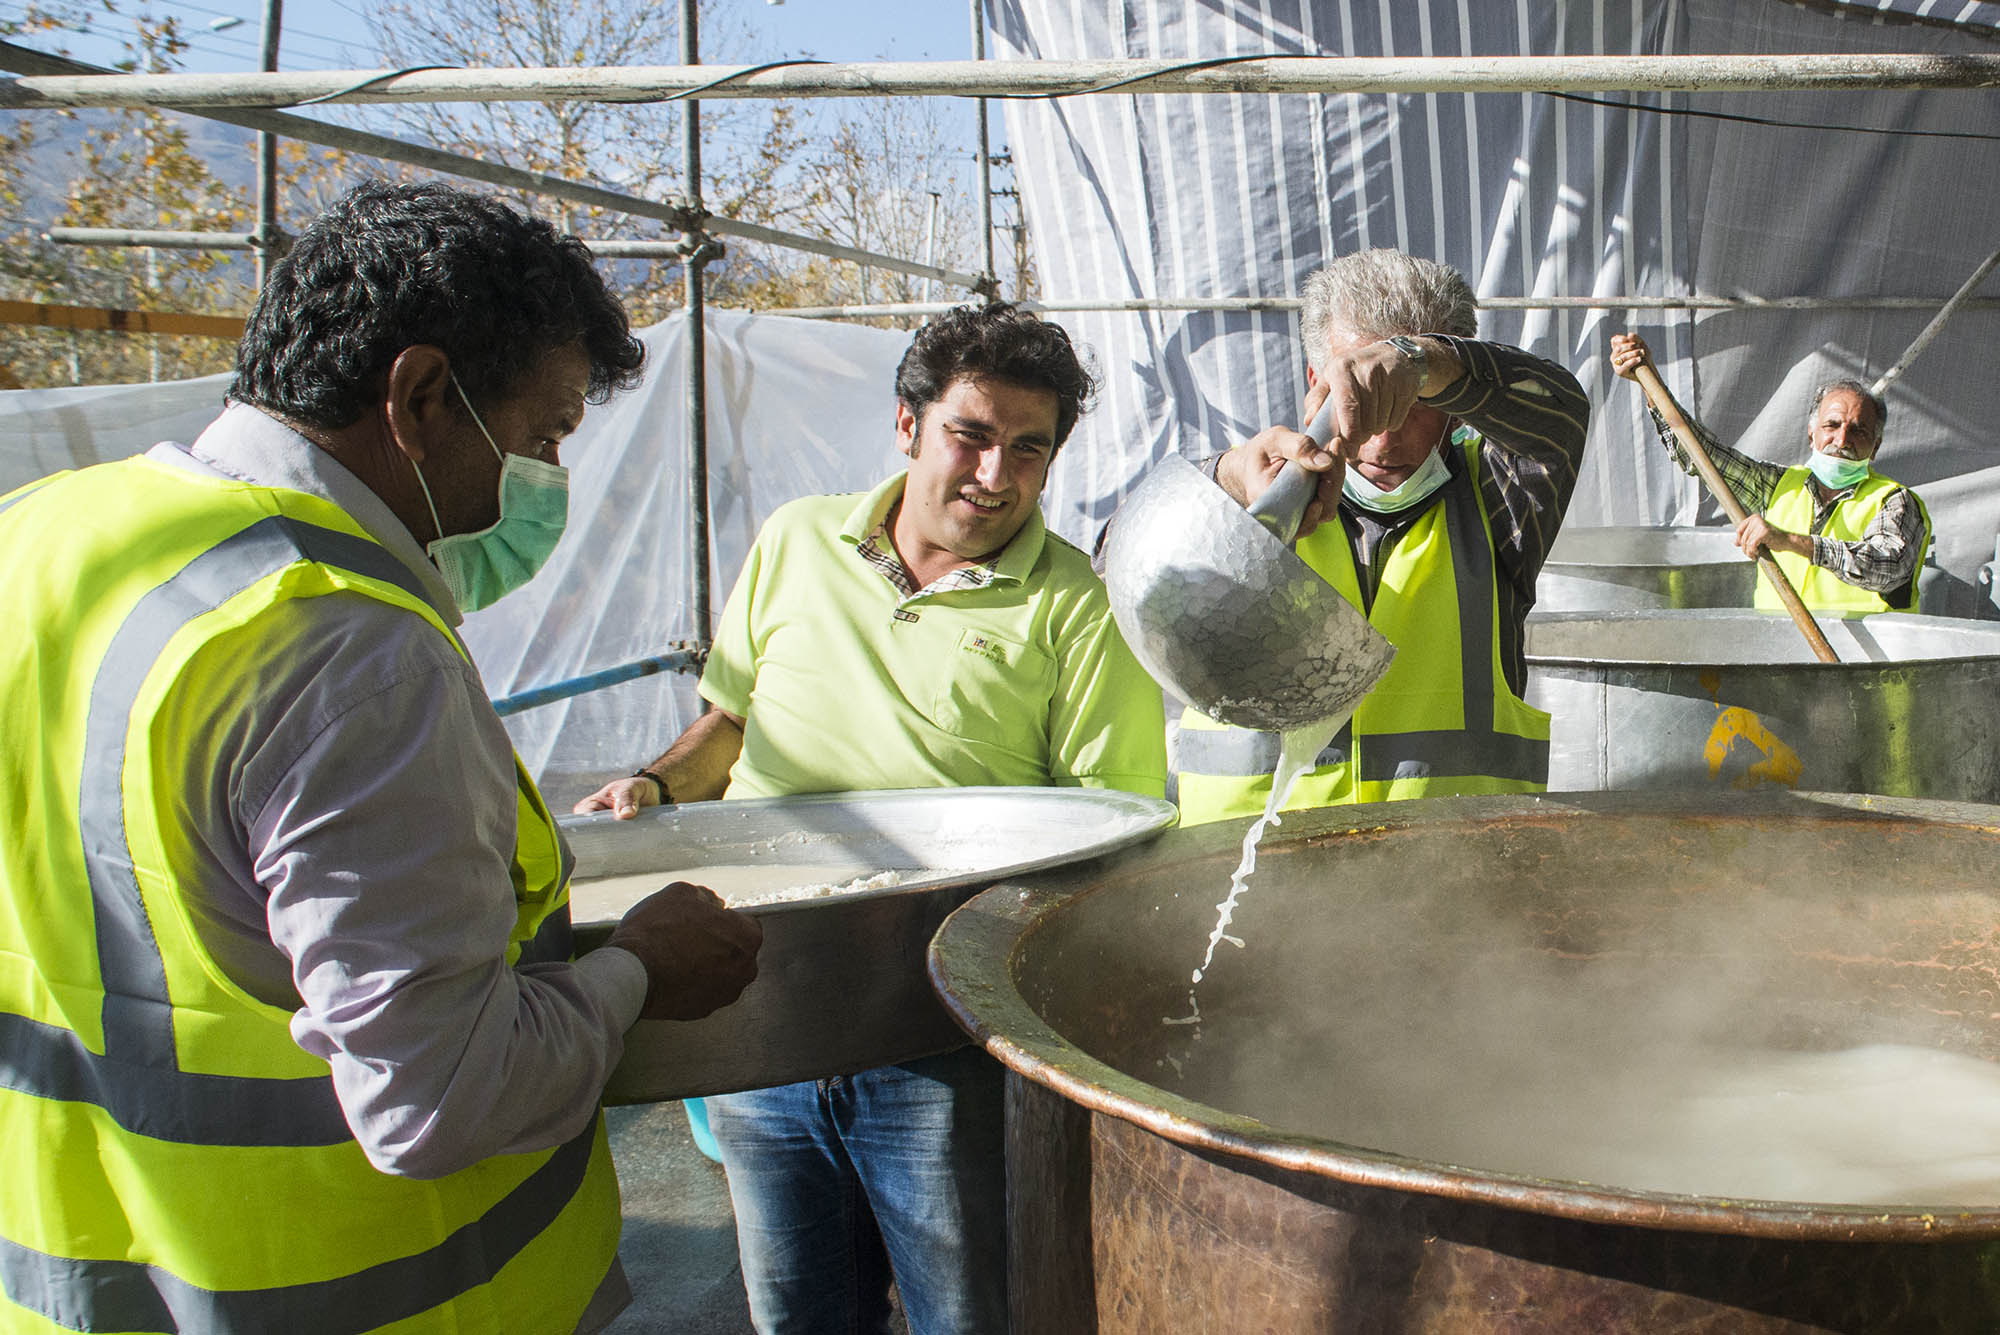 طبخ و توزیع 14 تن حلوا زرد در شیراز